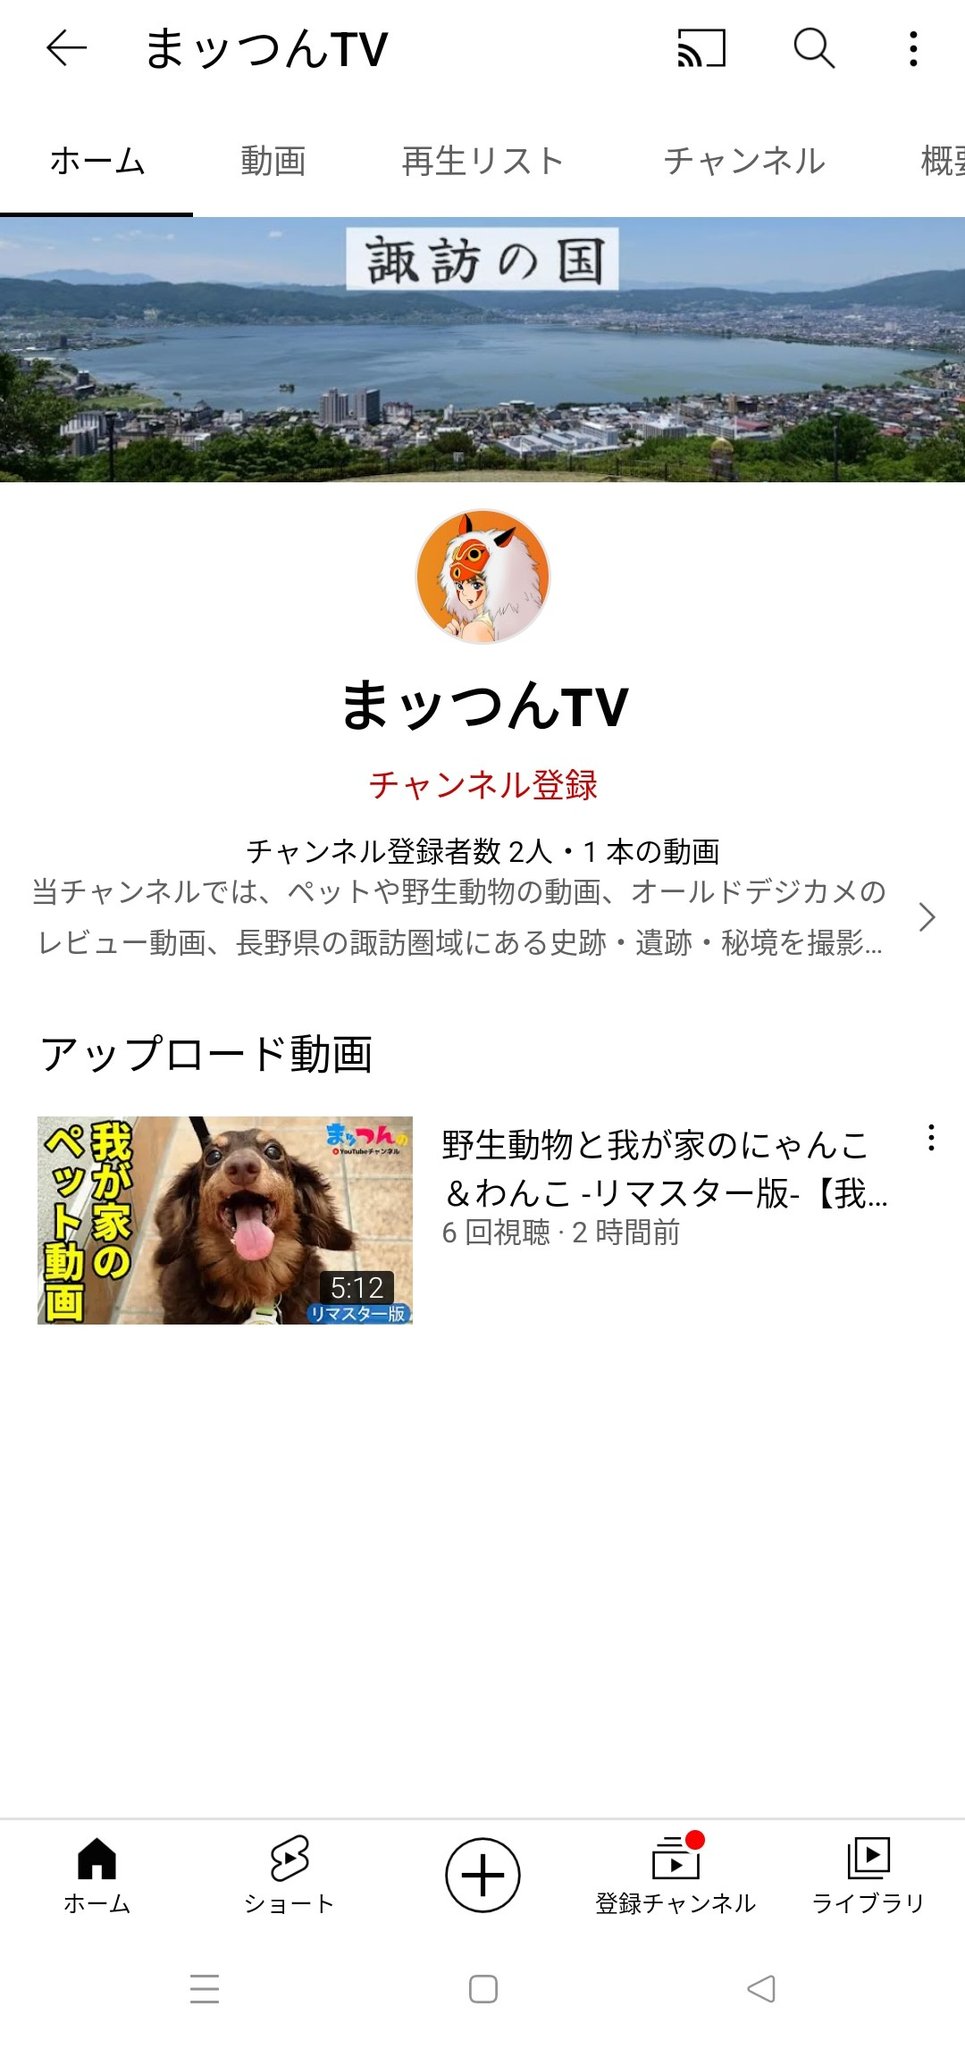 ダイスケ 菊咲さんから新チャンネル開設の連絡がありました T Co Fwhwfcmxjo Twitter